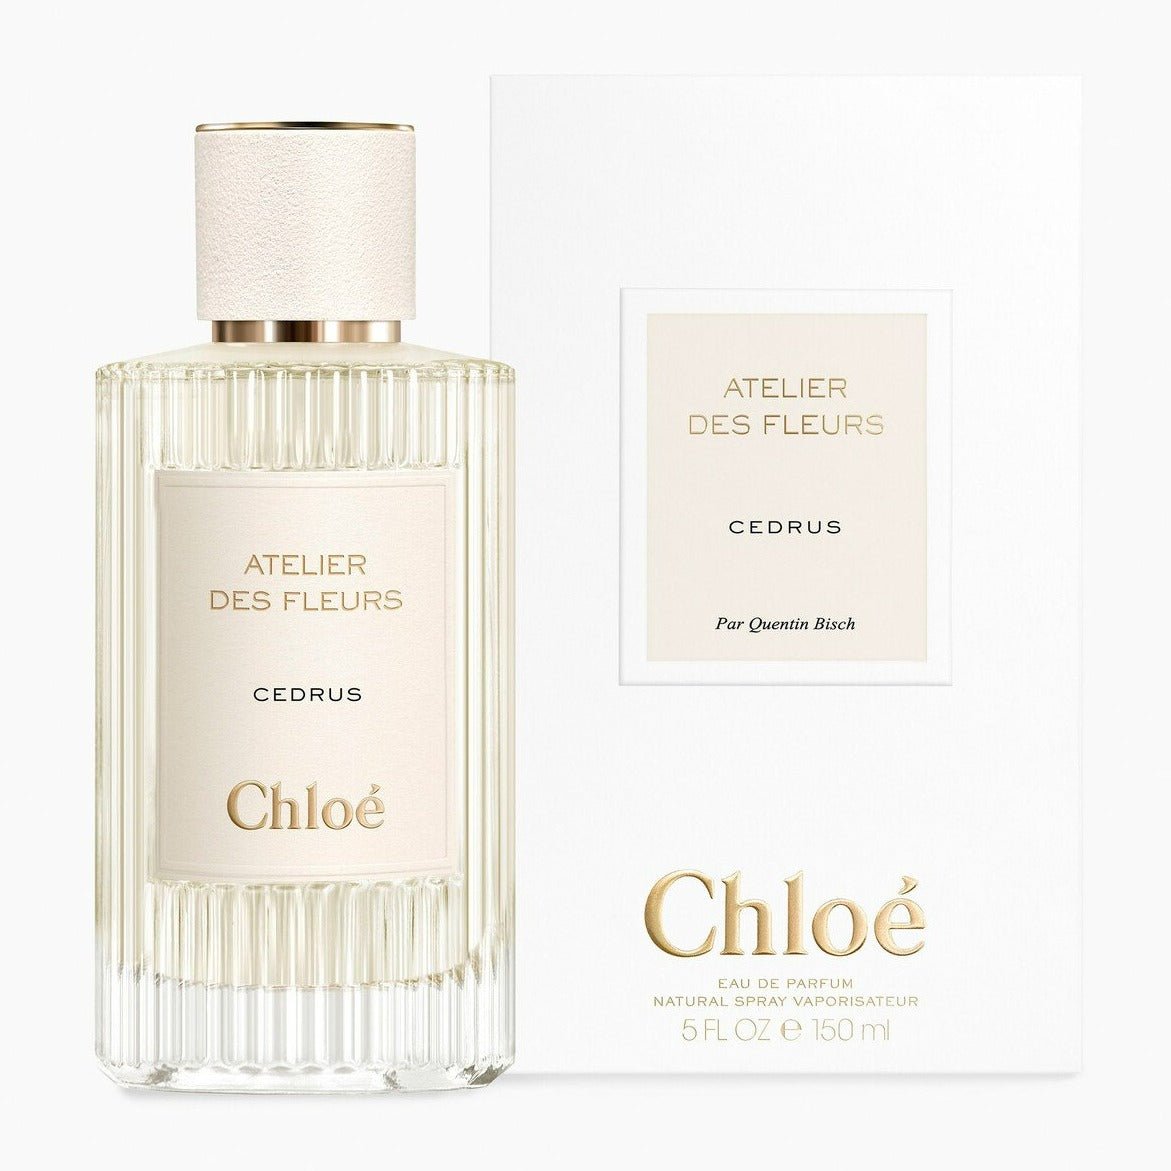 Chloe Atelier Des Fleurs Cedrus EDP | My Perfume Shop Australia